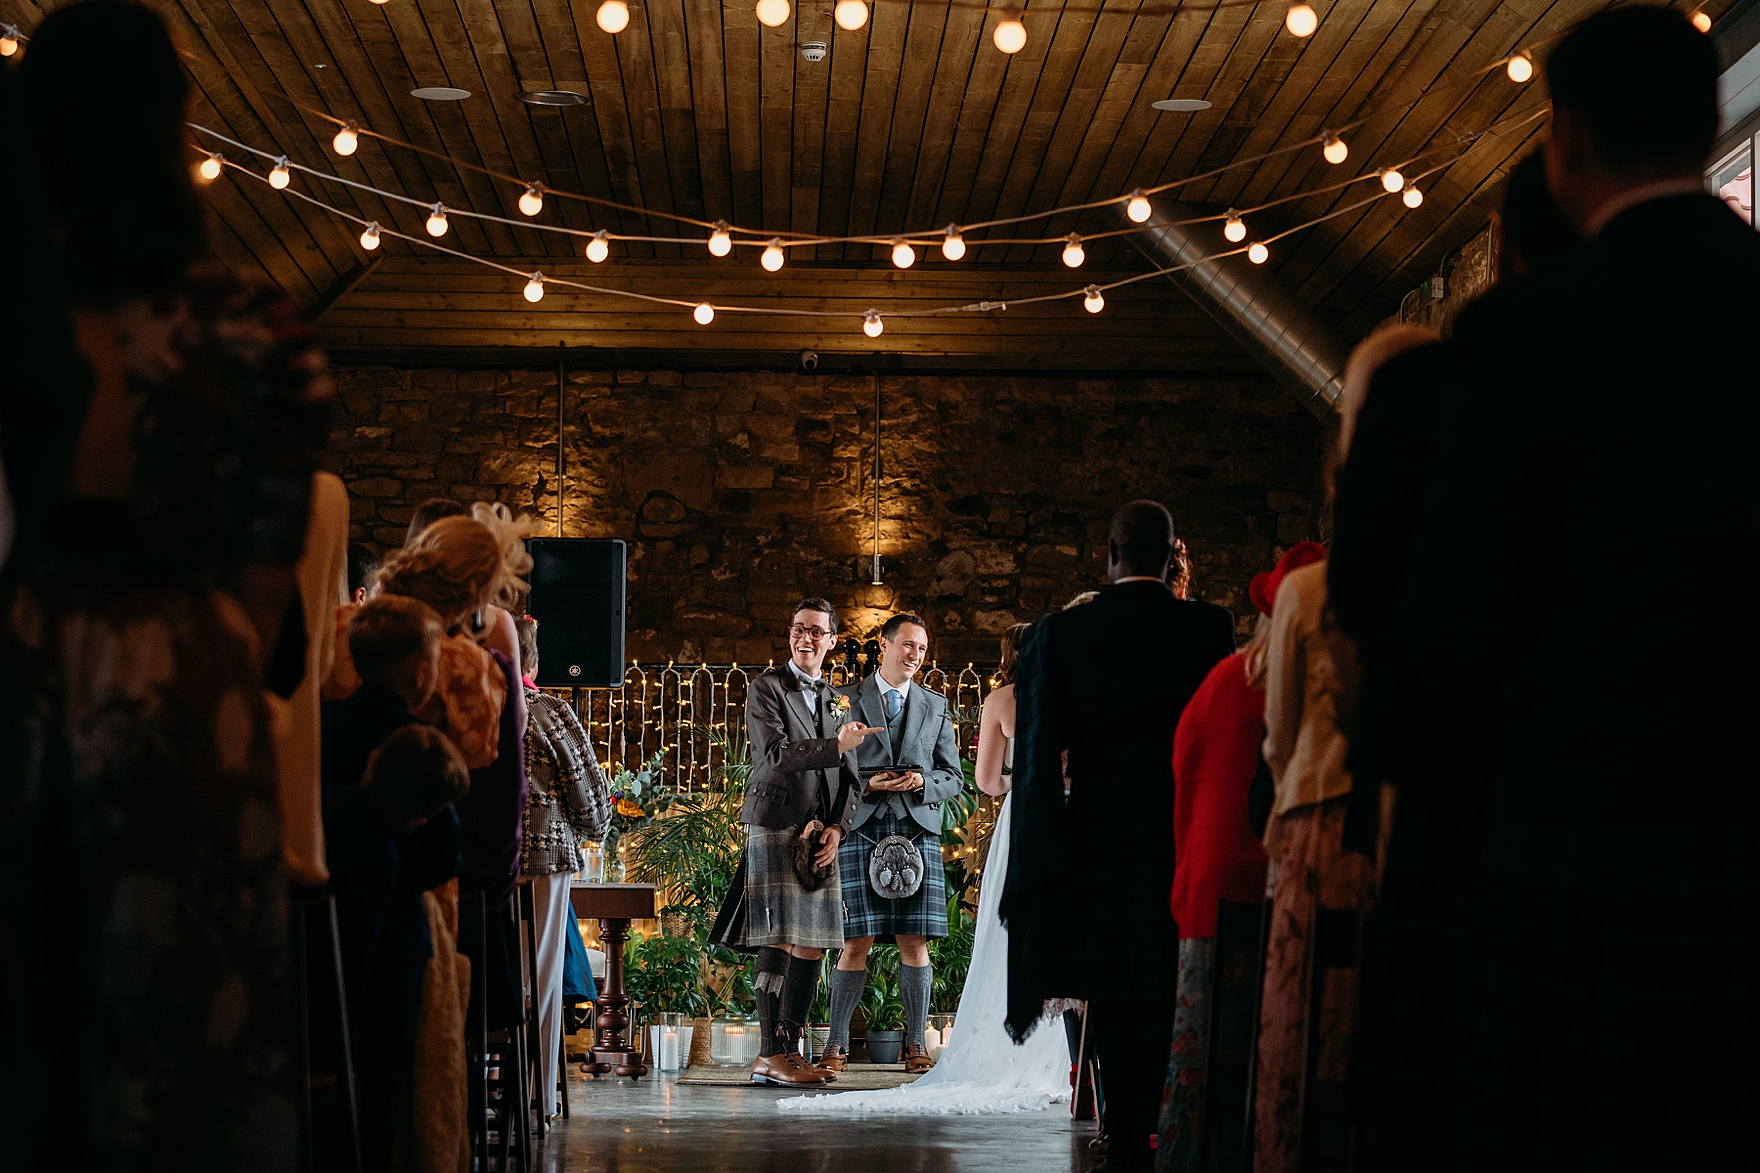 spring wedding falside mill indoor ceremony reception space bride groom 